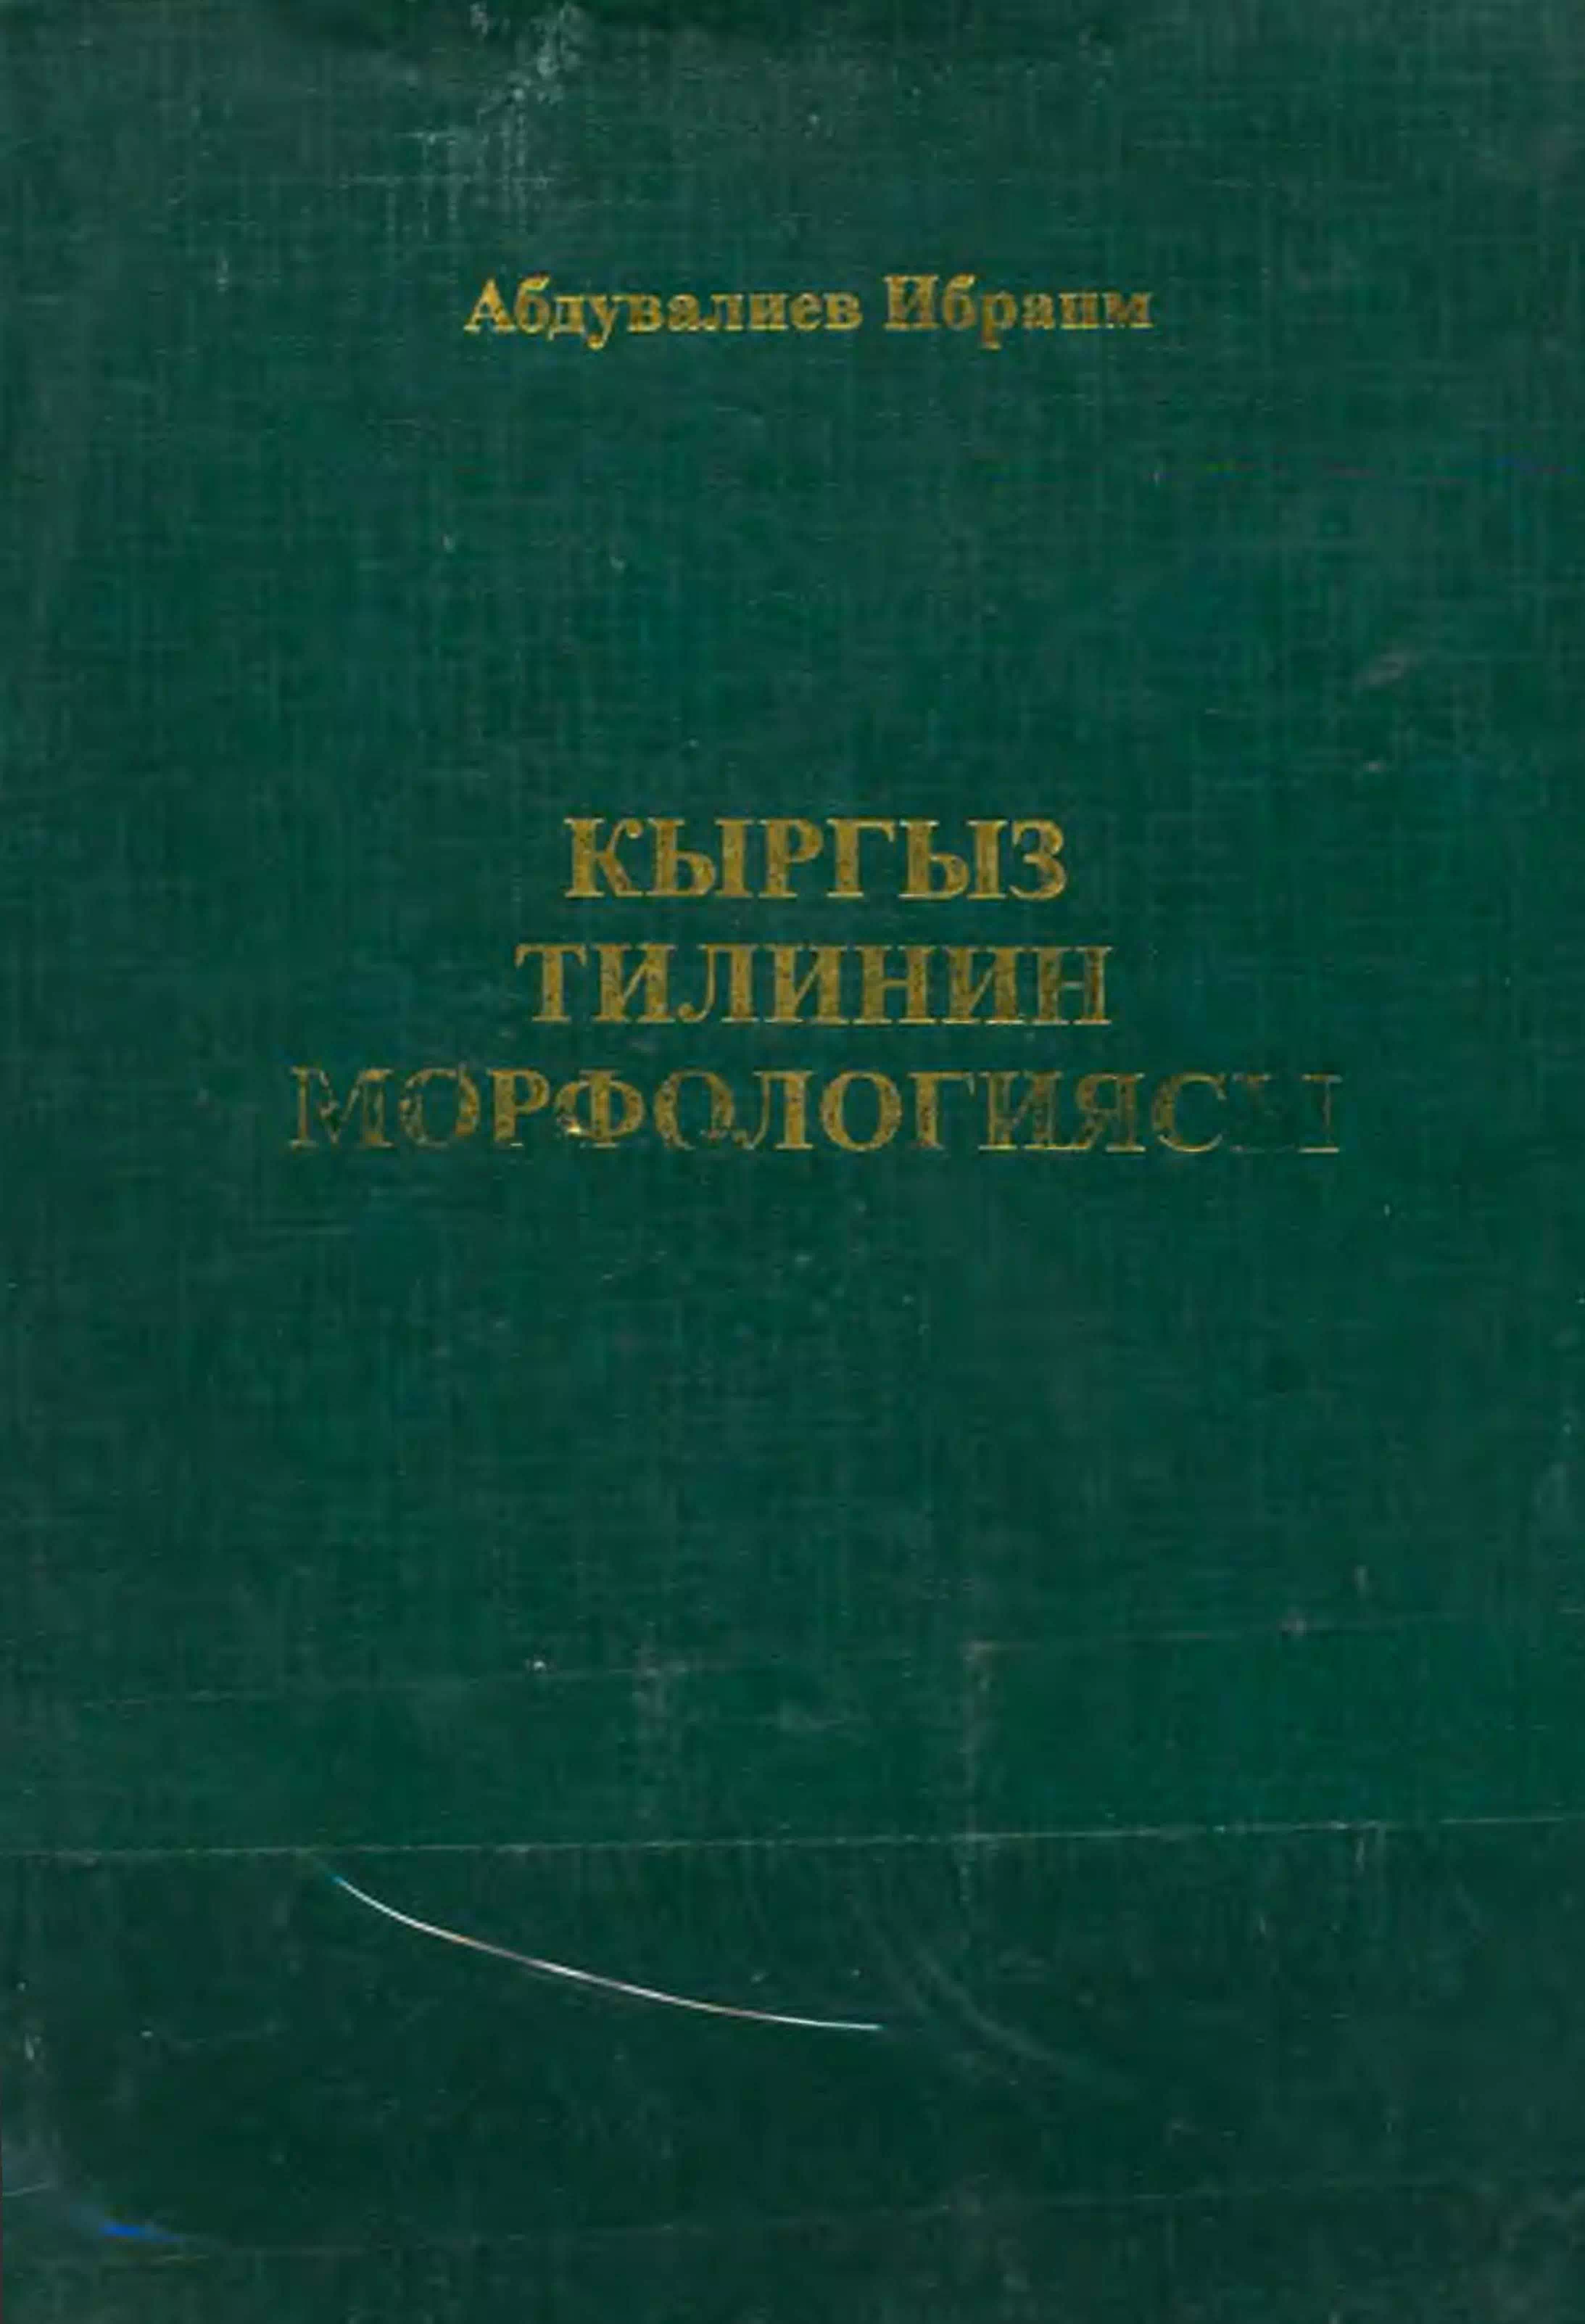 Морфология кыргызского языка картинка